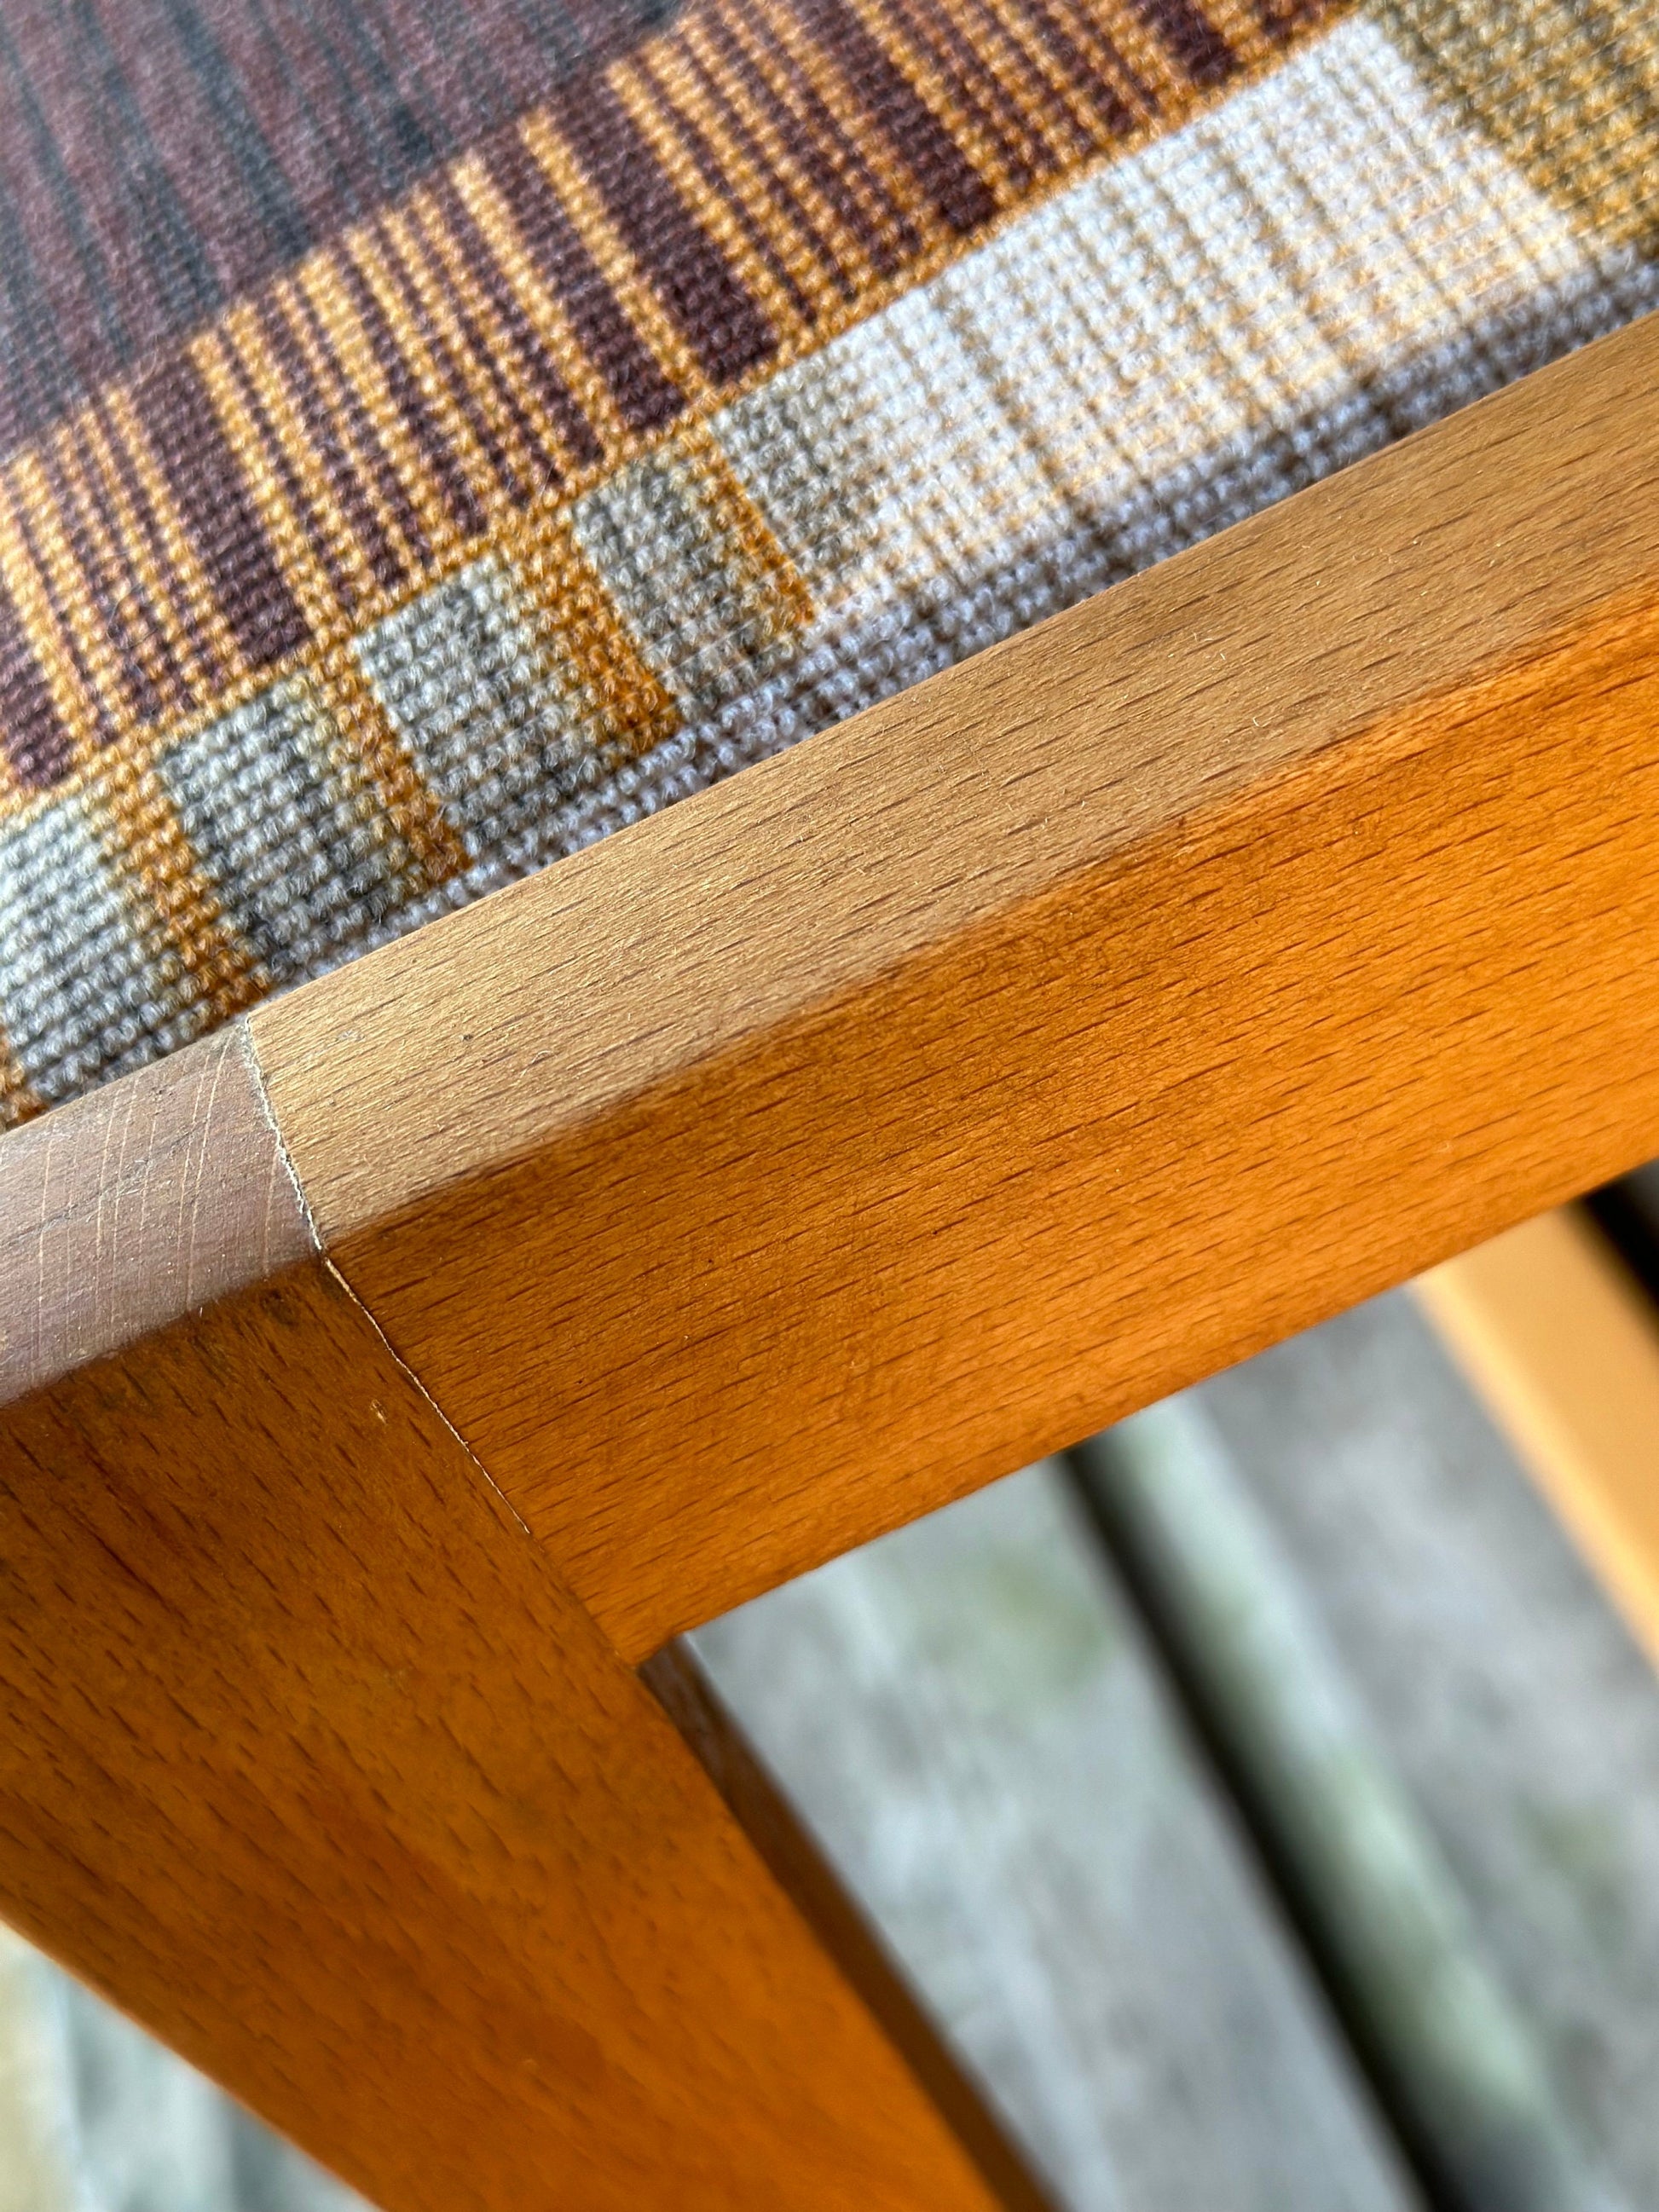 Bench Rectangle Hardwood Frame Upholstered Vintage Midcentury